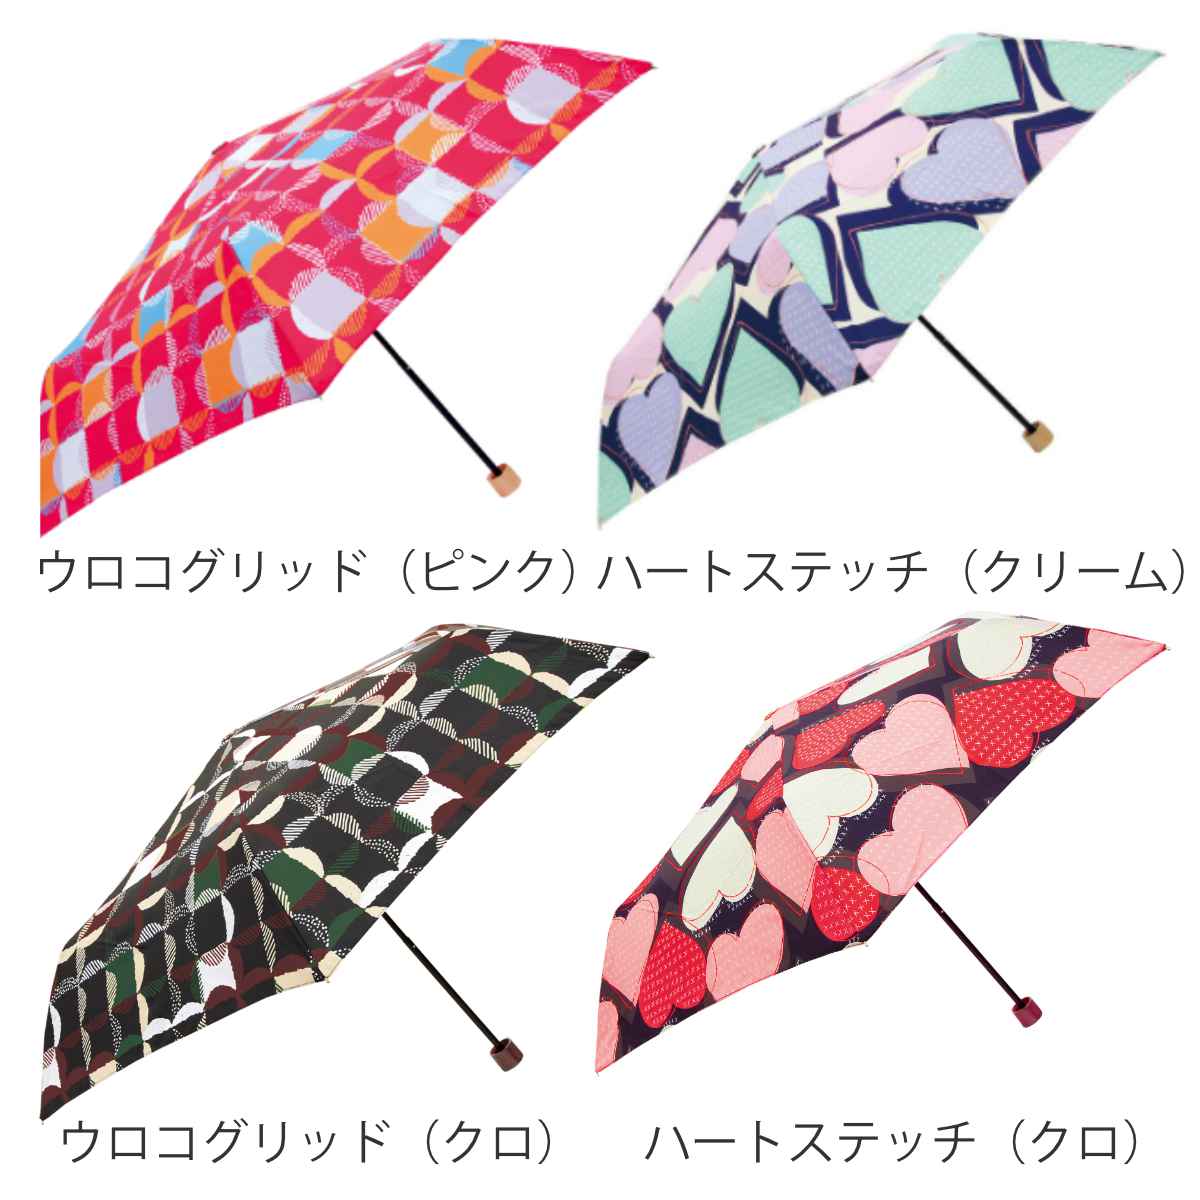 傘 折りたたみ傘 晴雨兼用 UV加工 shizuku light 防水加工 55cm 柄物 